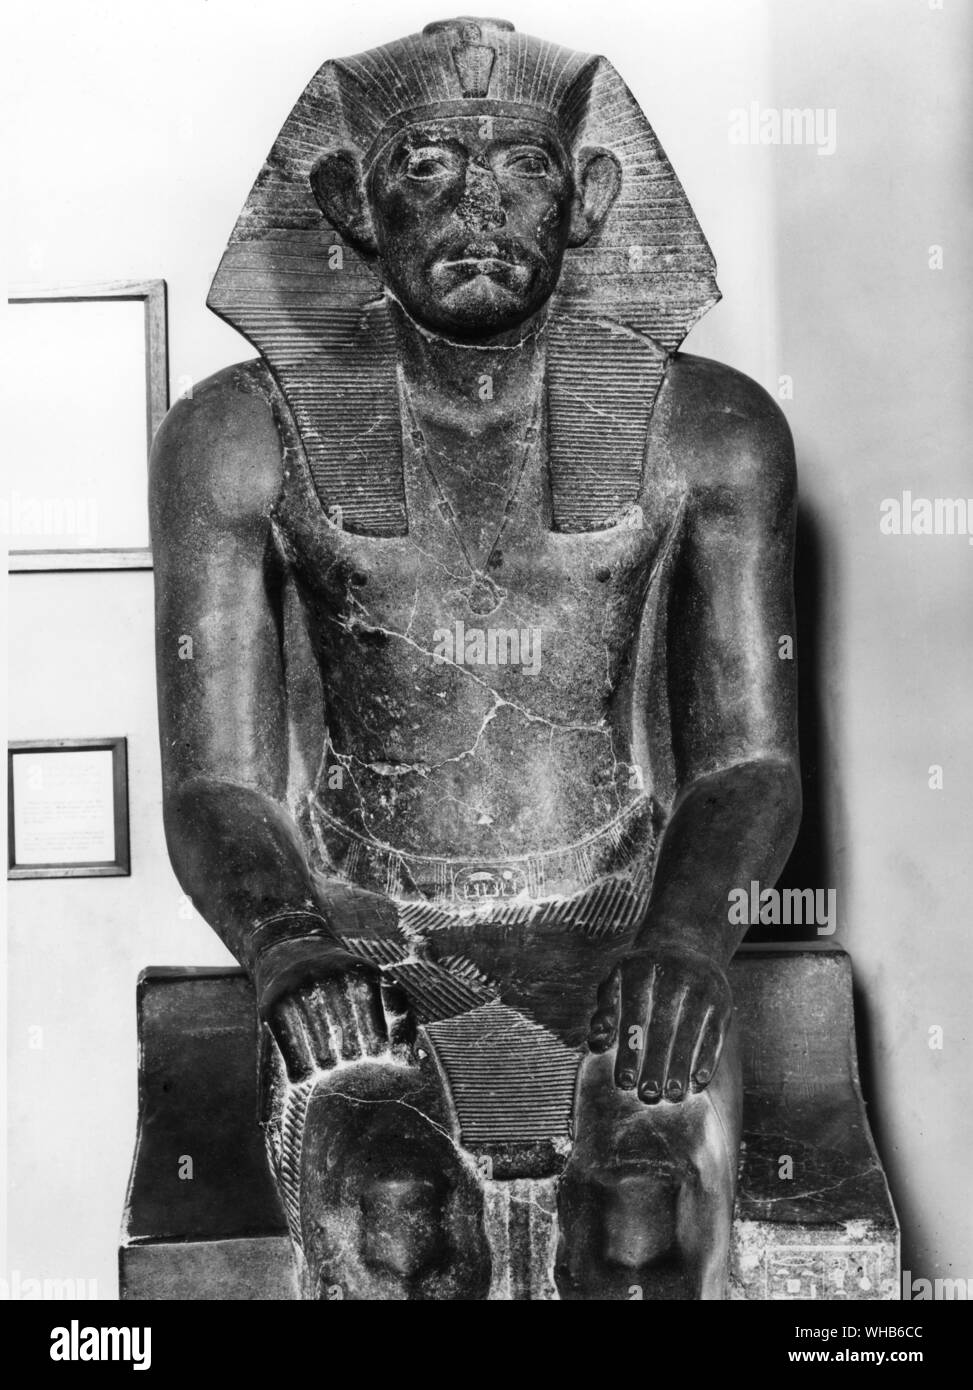 Sphinx de Sésostris III Empire du Milieu xiie dynastie (1878-1843 av. J.-C. ?) - Khakhaure Sésostris III (également écrit Senwosret III ou Sesostris III) est un pharaon de l'Égypte. Il règne de 1878 avant JC à 1839 avant J.-C., et était le cinquième monarque de la douzième dynastie de l'Empire du Milieu. Il était un grand pharaon de la xiie dynastie, et est censé être le plus puissant dirigeant égyptien de cette époque. Pour cela, il est considéré comme l'une des sources de la légende à propos de Sesostris.. Banque D'Images